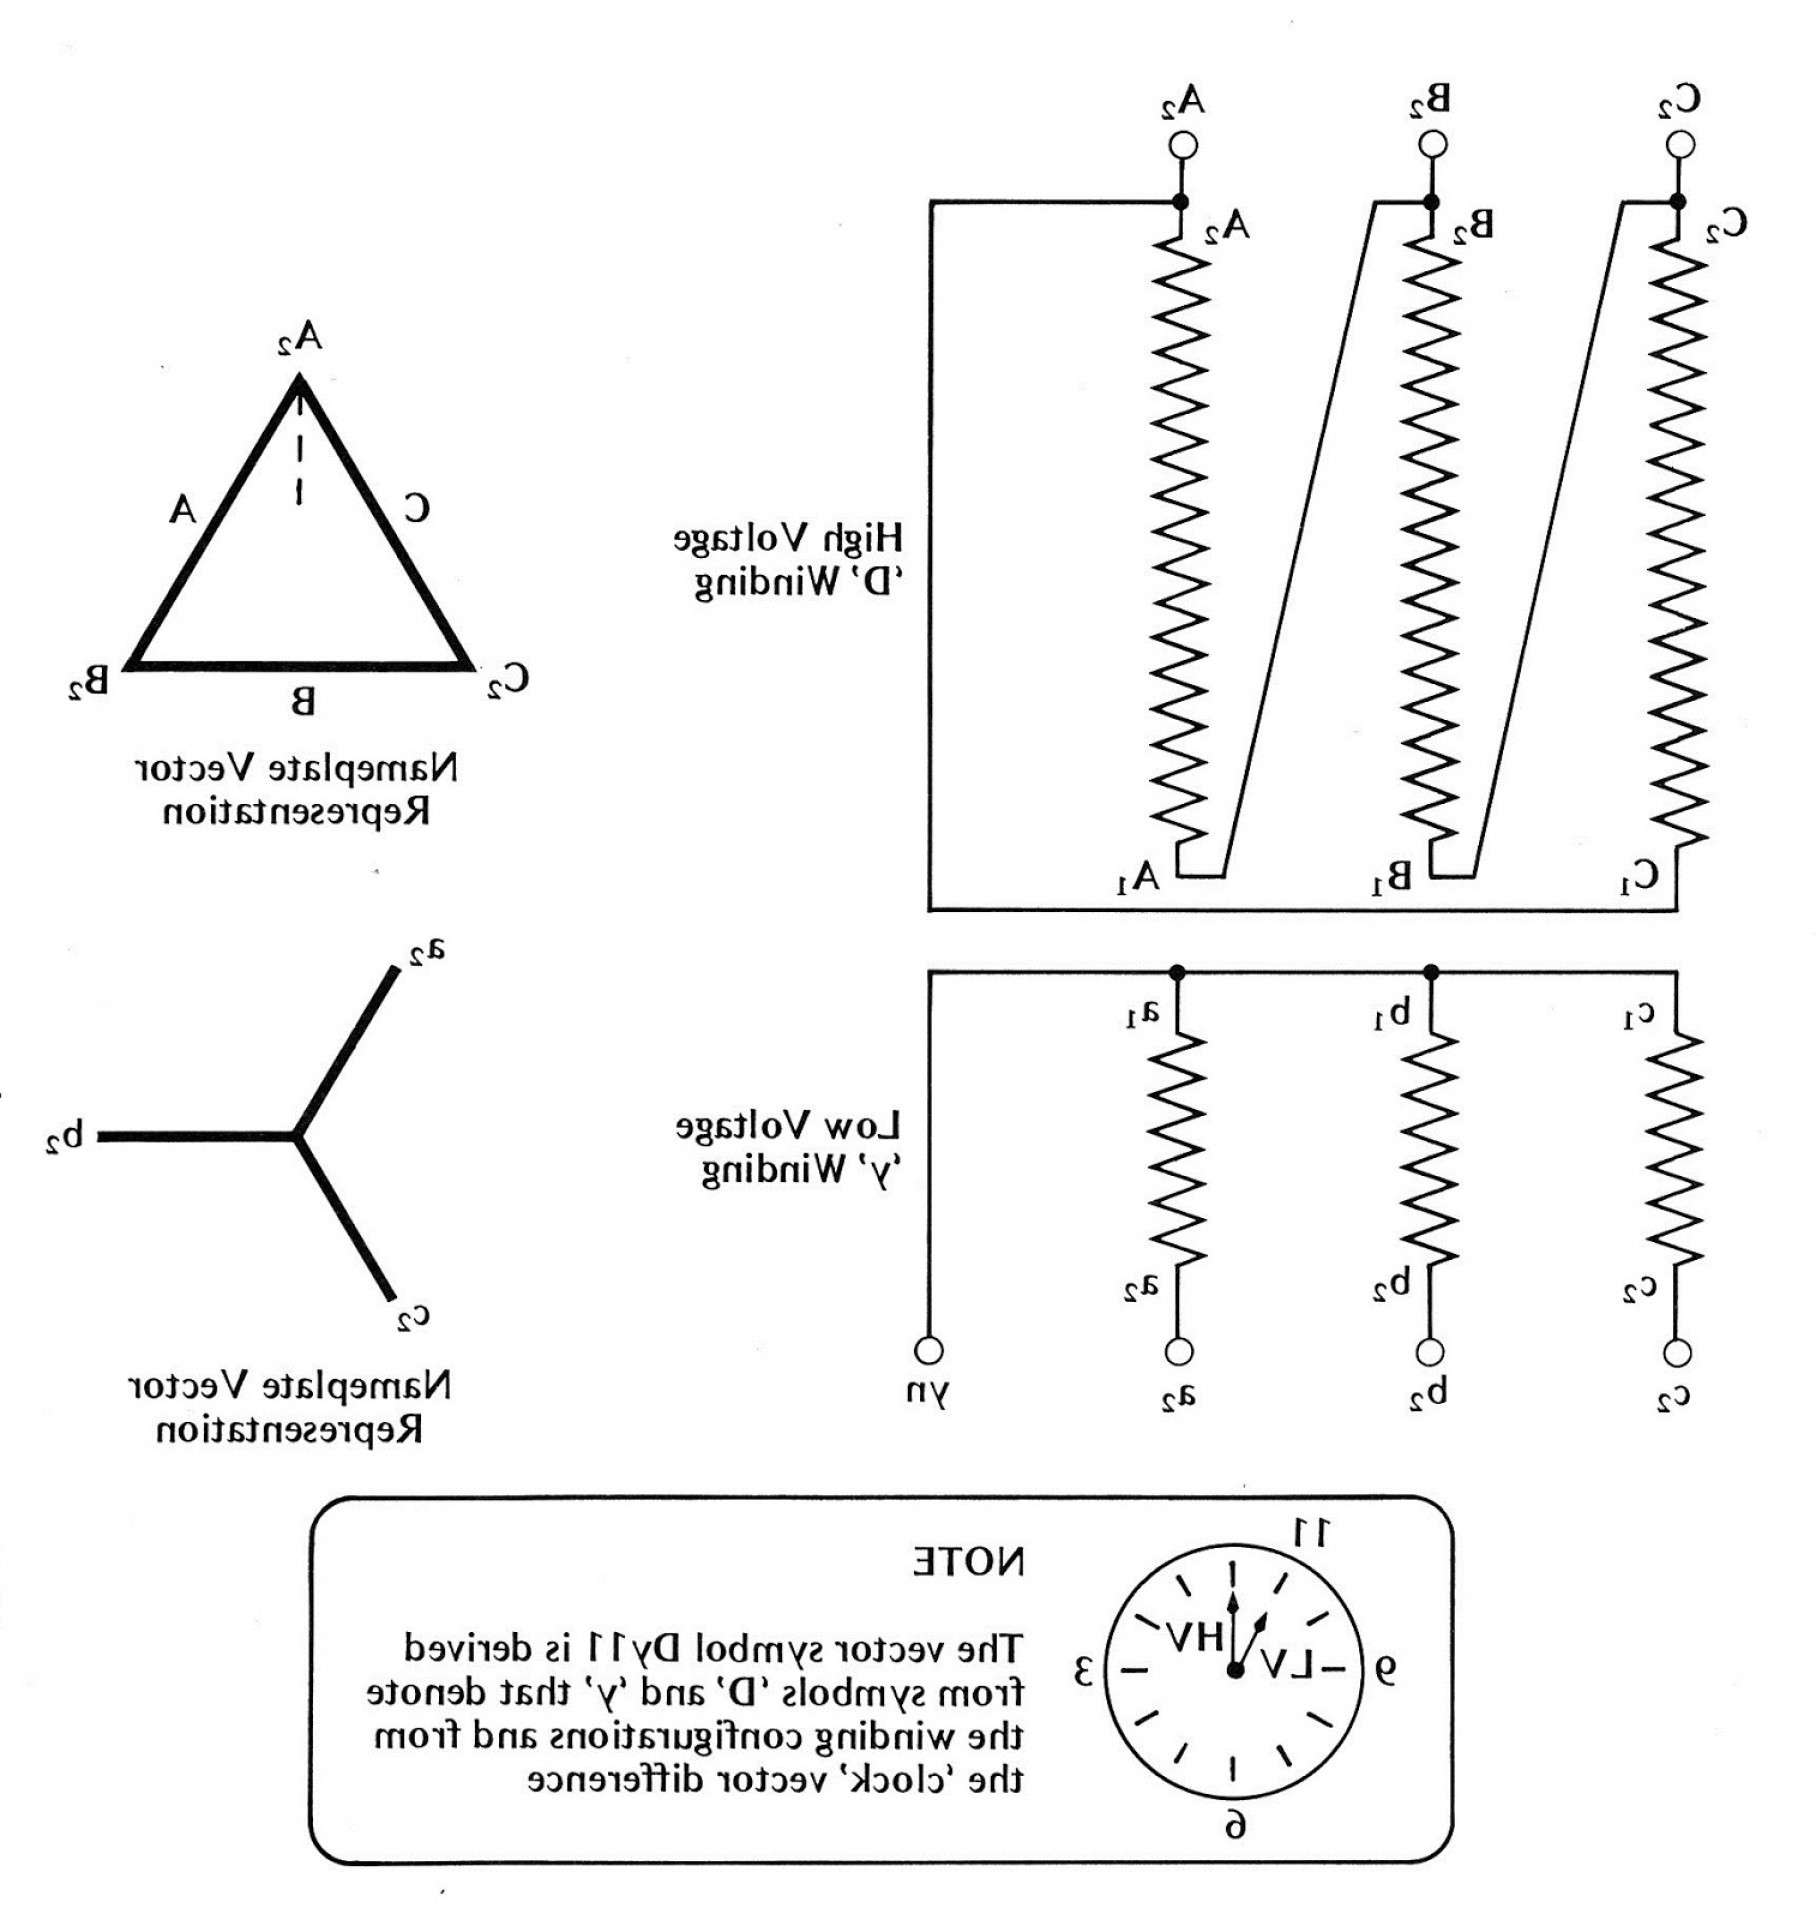 Single Phase Transformer Wiring Diagram Symbols For Three Phase - 3 Phase Transformer Wiring Diagram